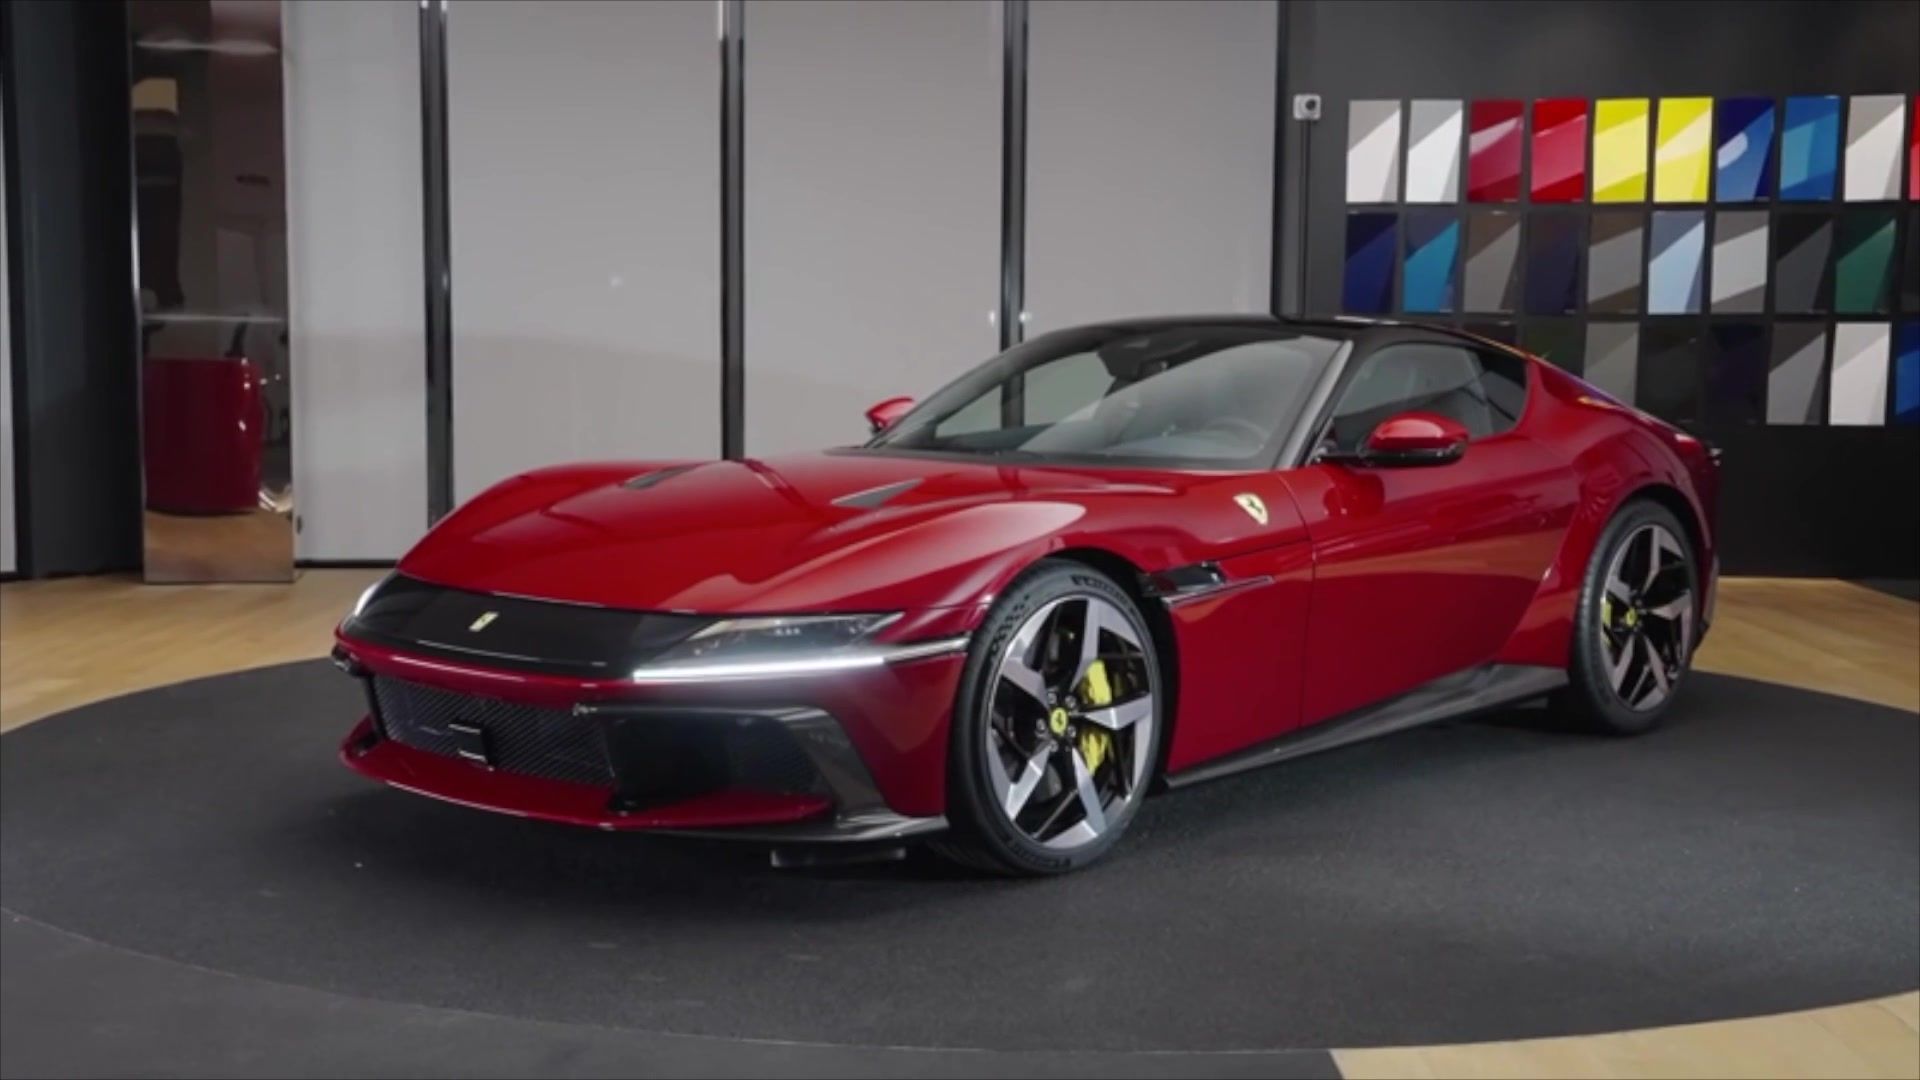 The all-new Ferrari 12Cilindri Design in Red